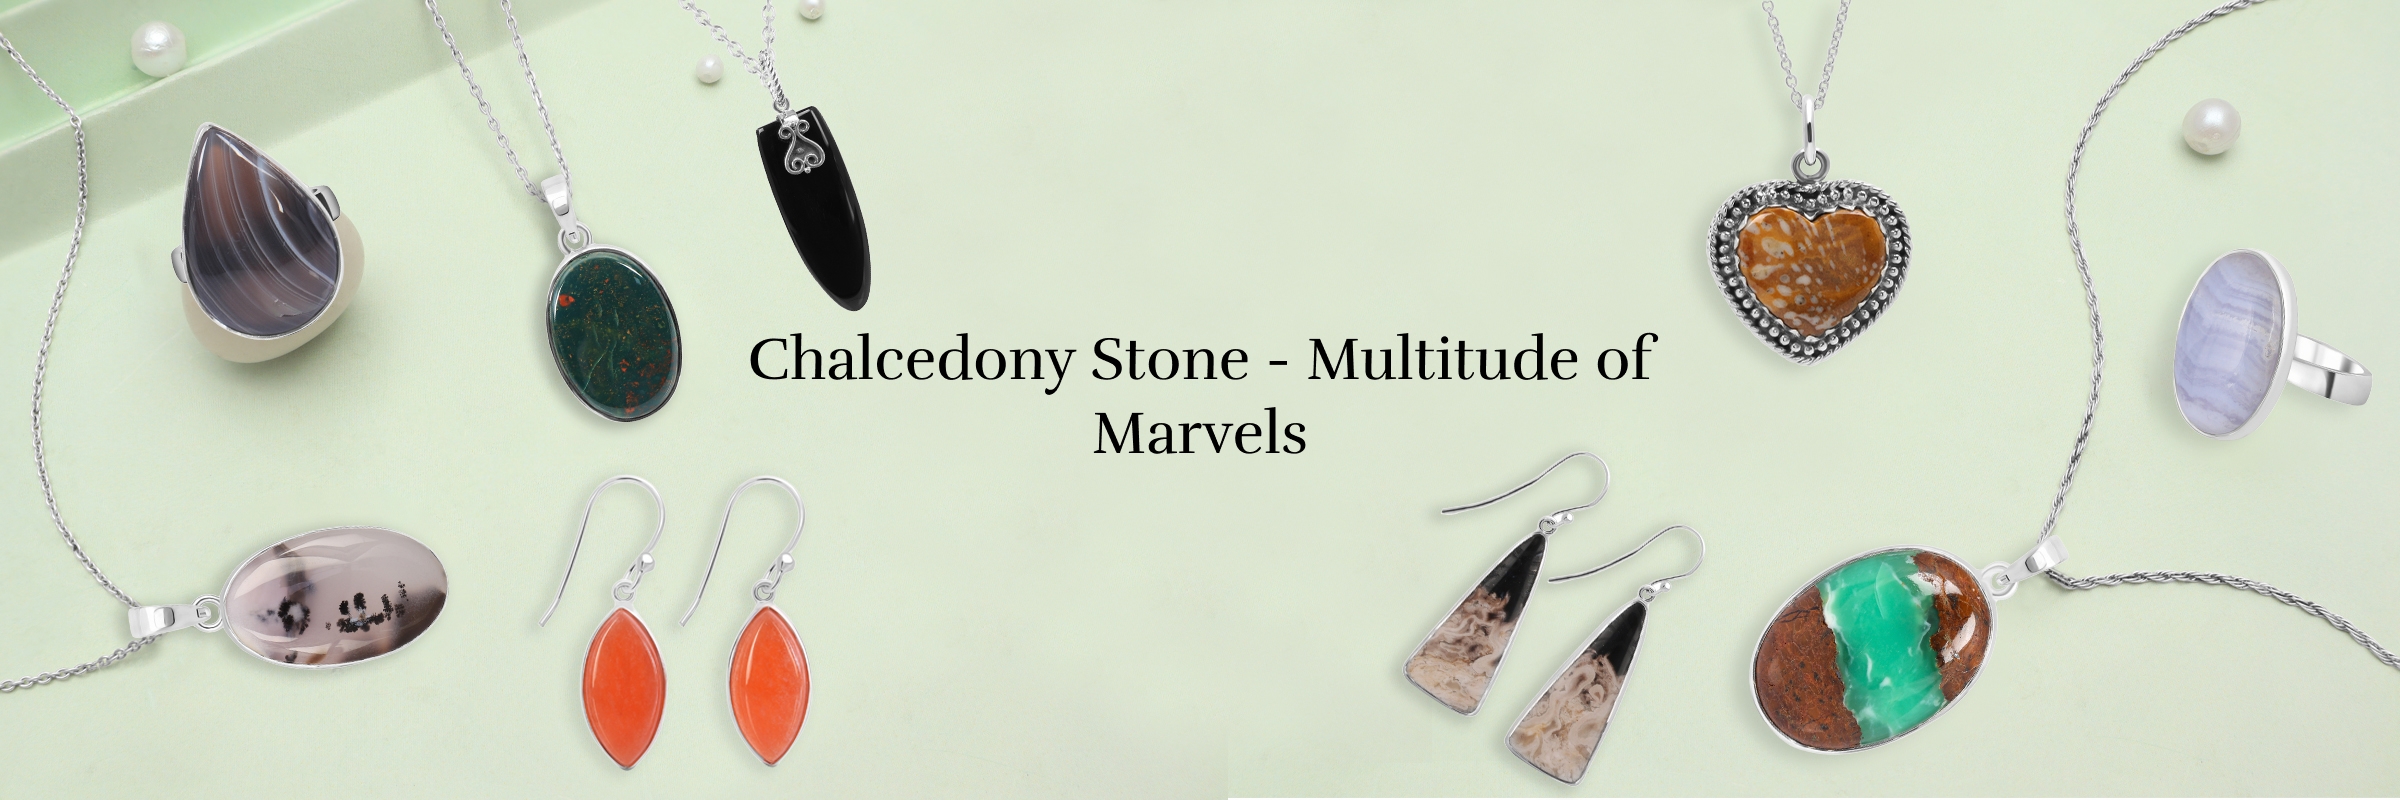 Varieties of Chalcedony Stone